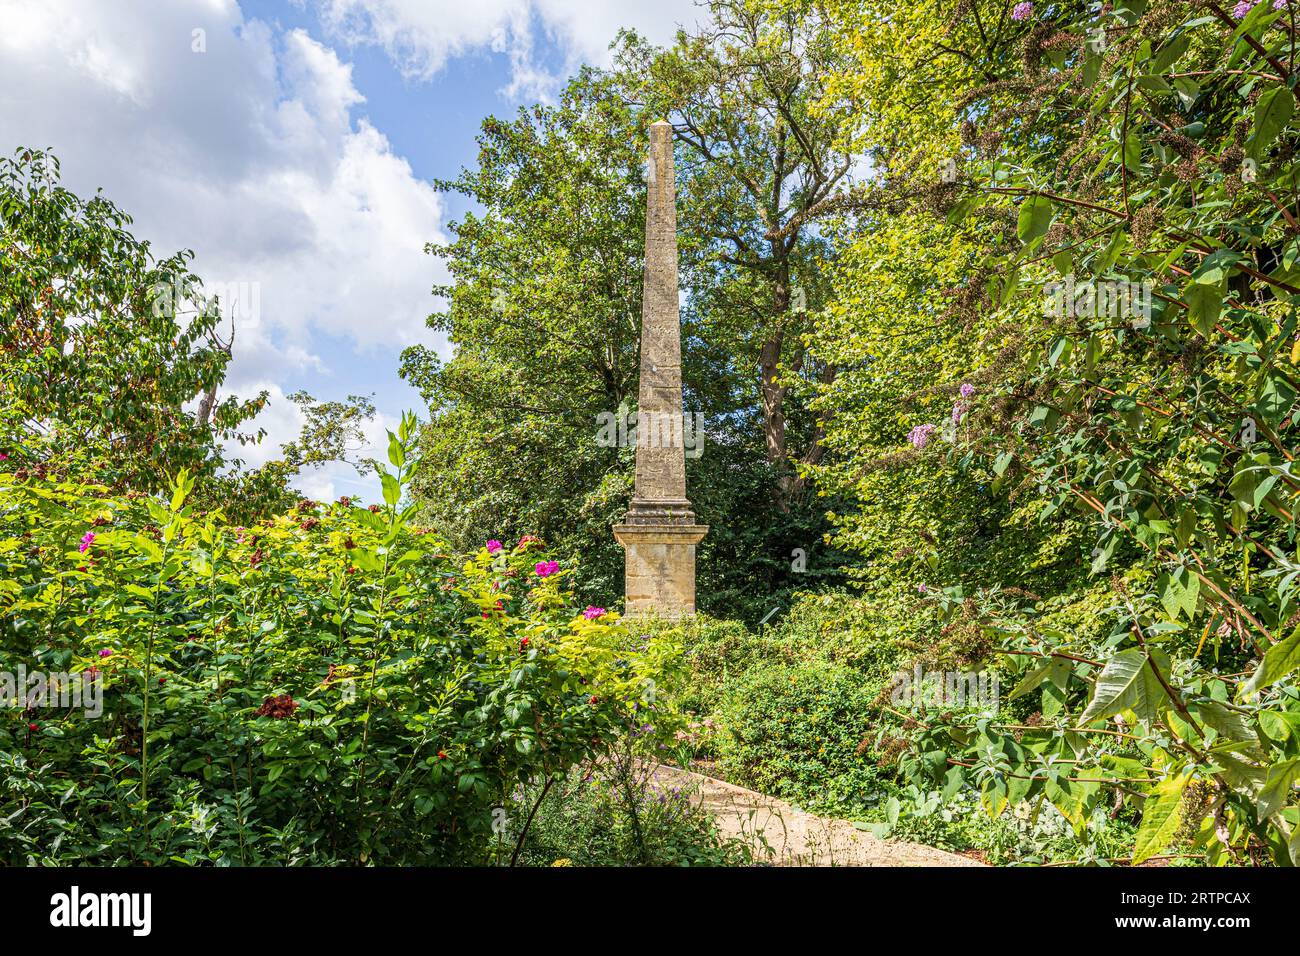 Der 15 Meter hohe Obelisk aus dem 19. Jahrhundert, der in der Stadt Cirencester in Gloucestershire, England, aus lokalen Kalksteinblöcken gebaut wurde Stockfoto